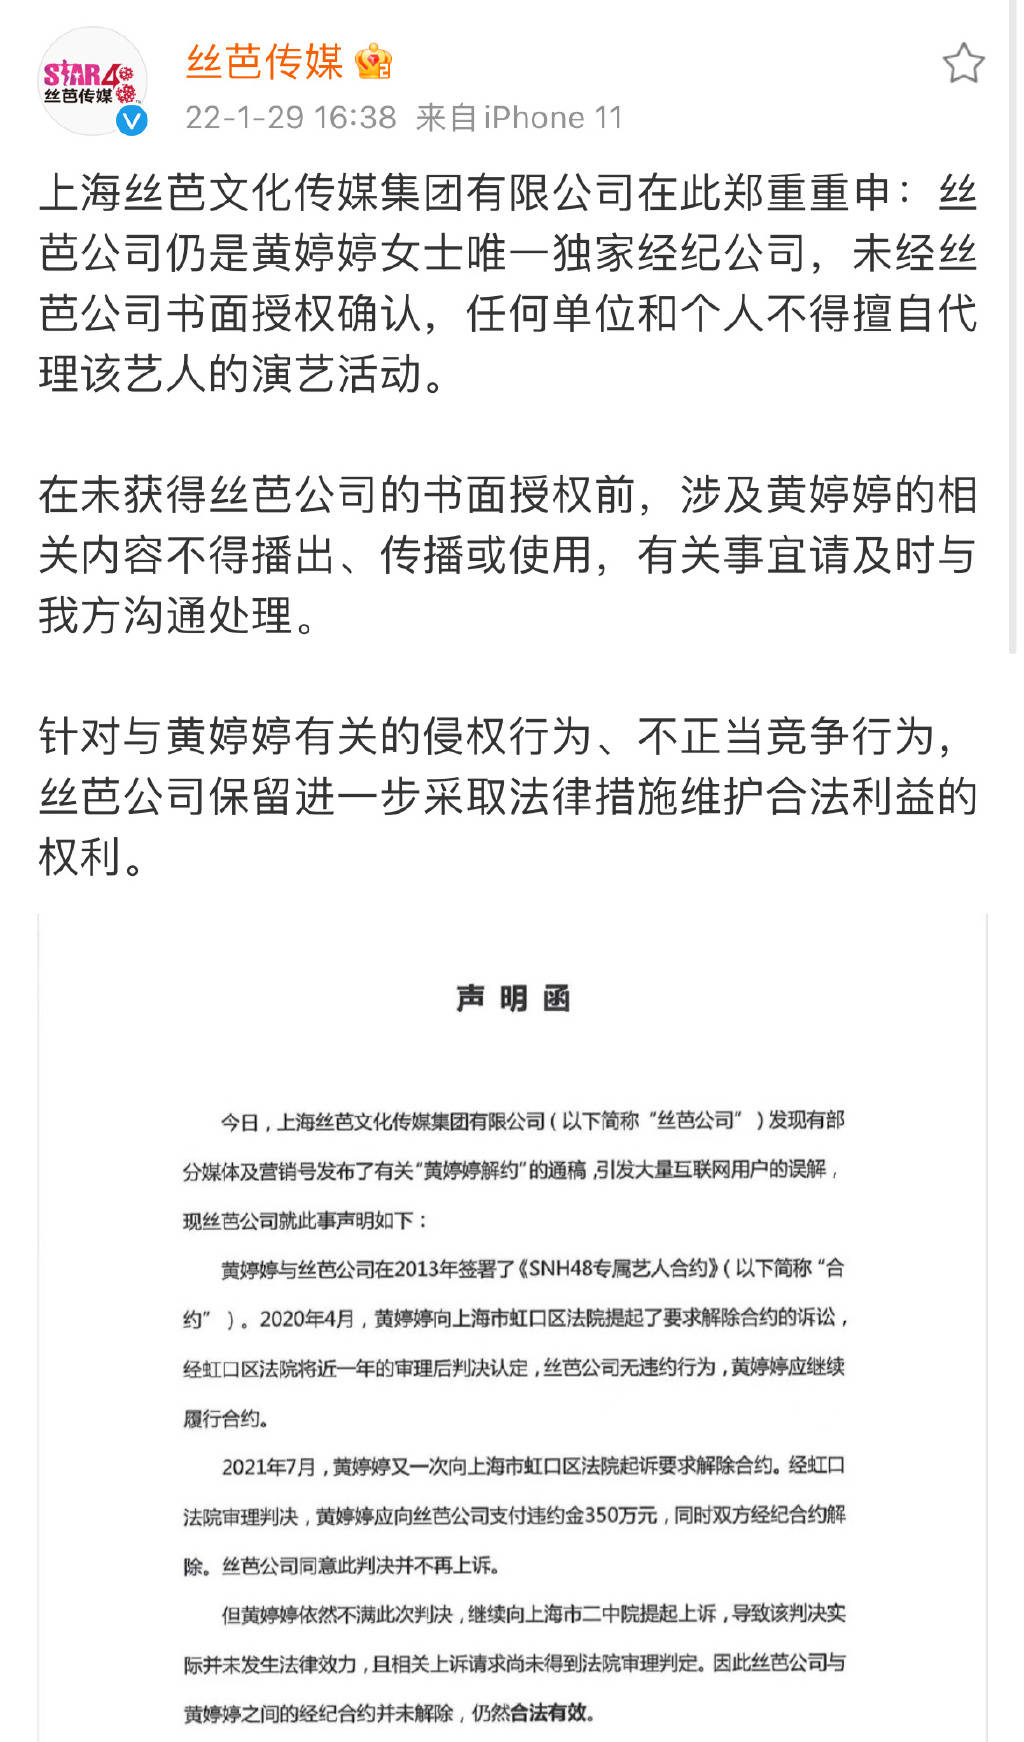 丝芭传媒称仍是黄婷婷唯一独家经纪公司 早前双方陷解约风波